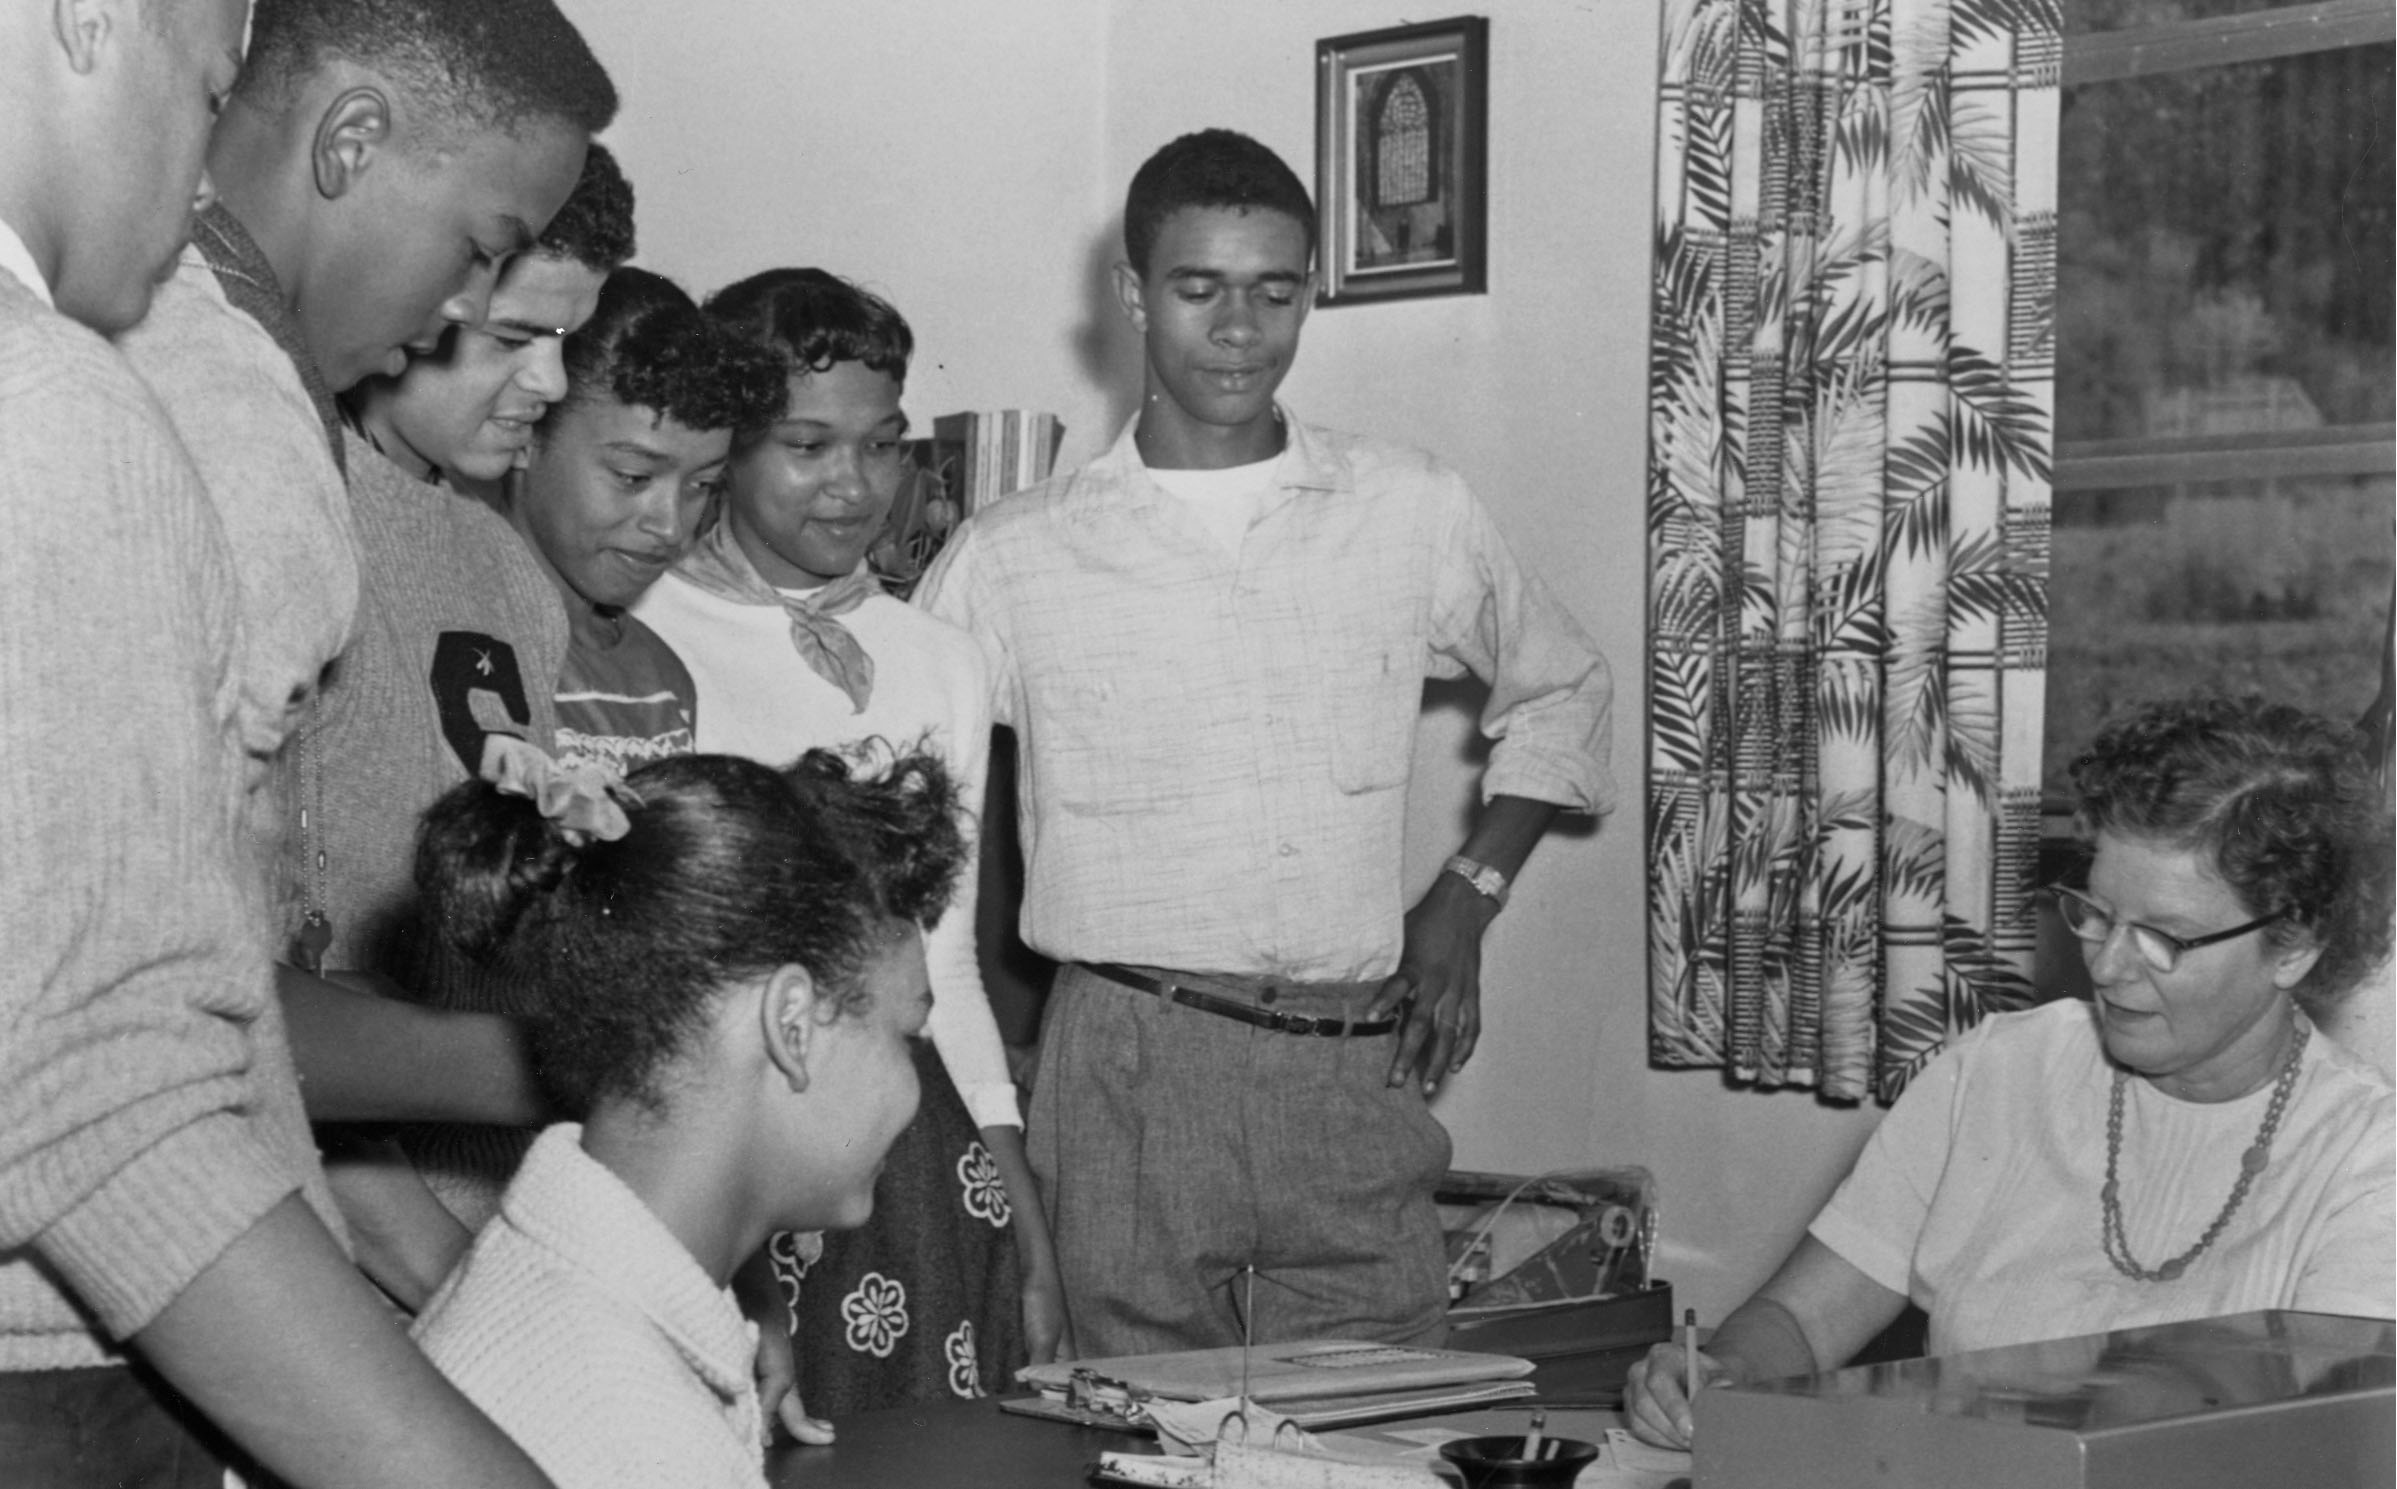 黑人学生的档案照片注册类在1950年代